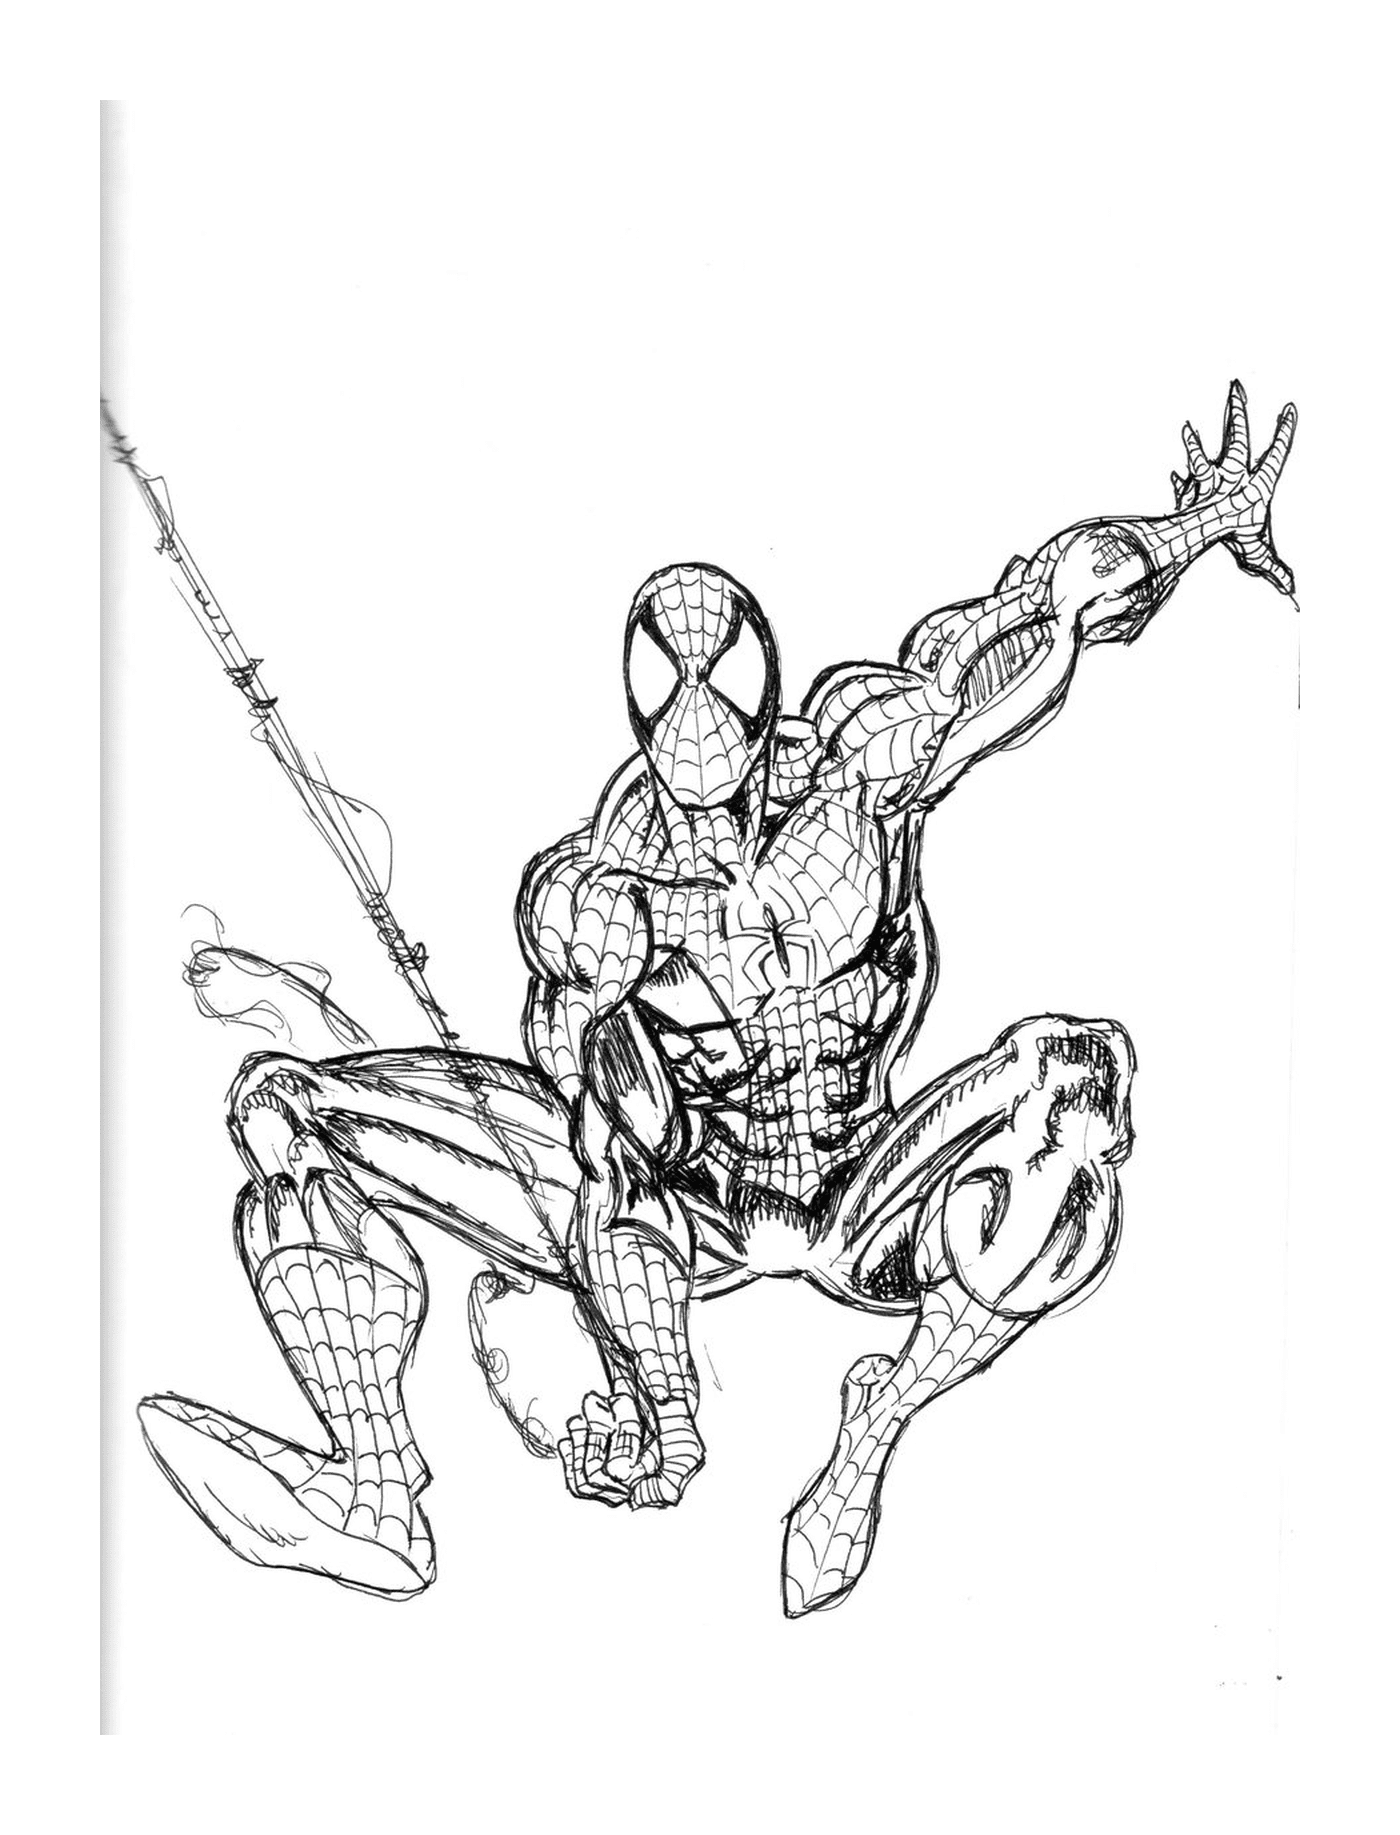   Spiderman avec une canne à pêche 